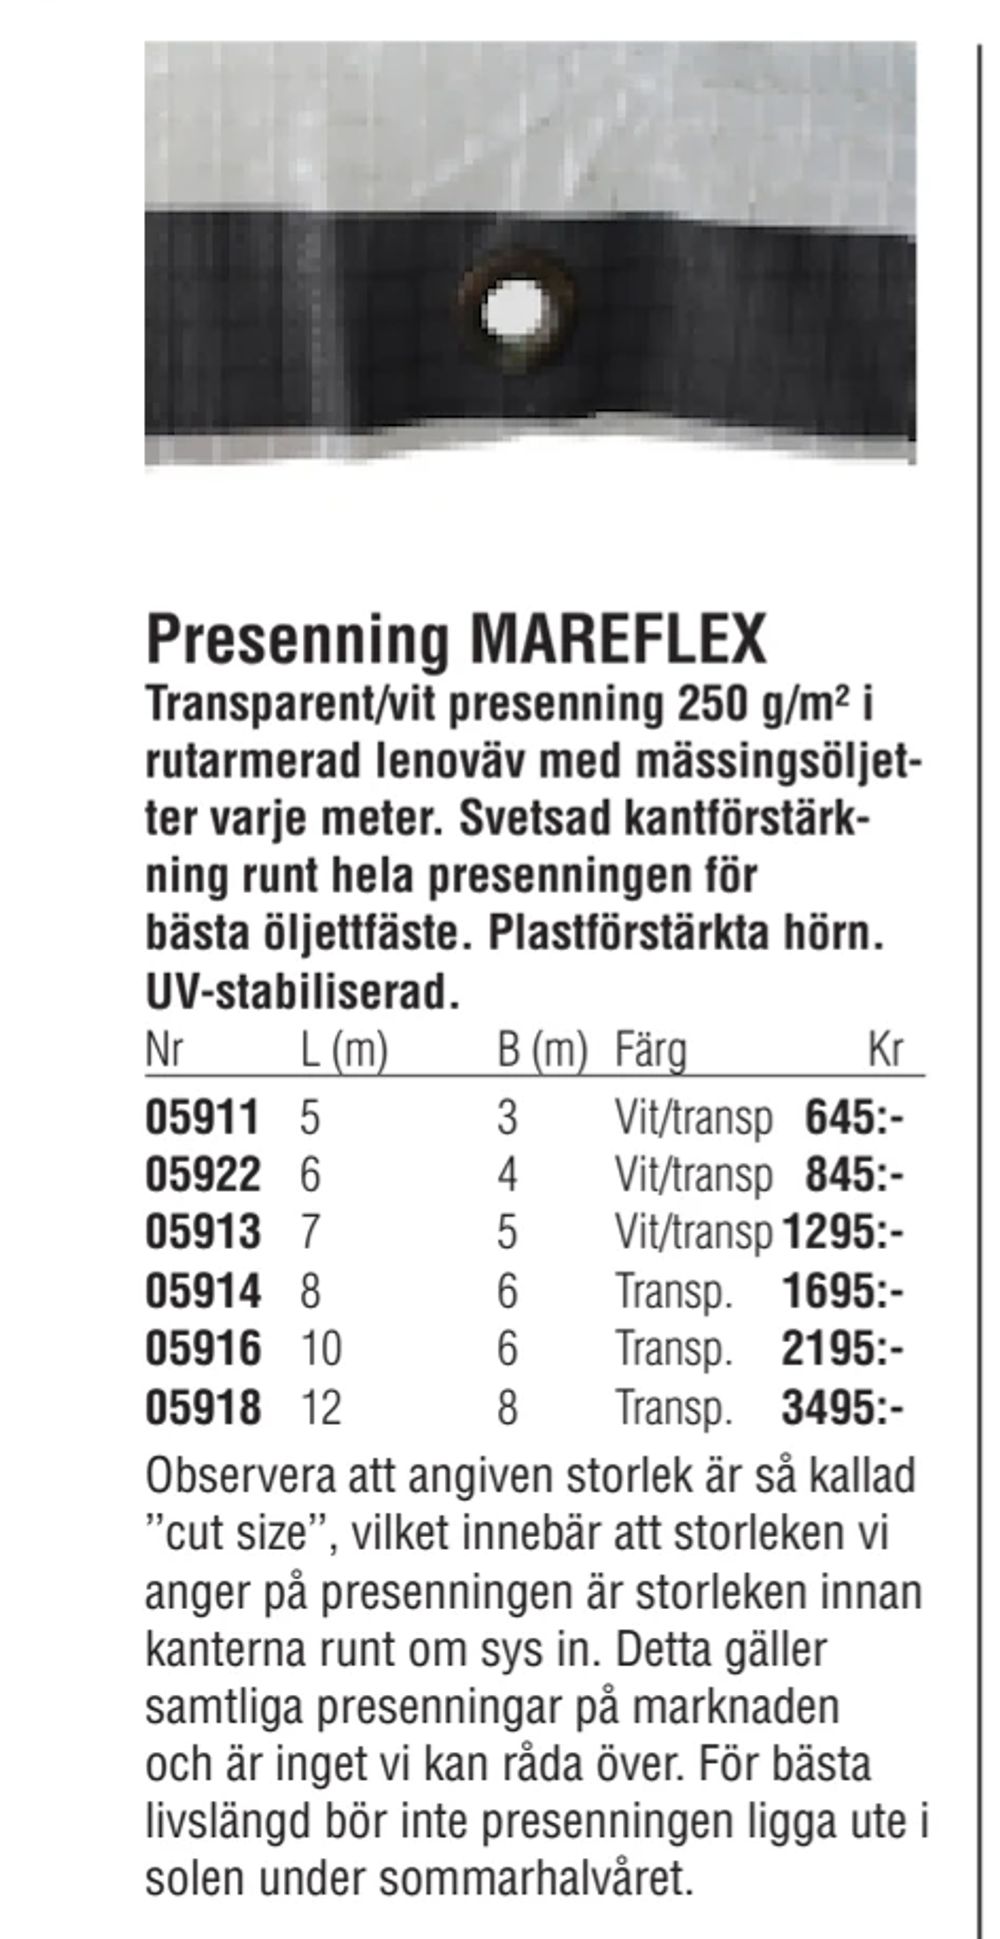 Erbjudanden på Presenning MAREFLEX från Erlandsons Brygga för 645 kr